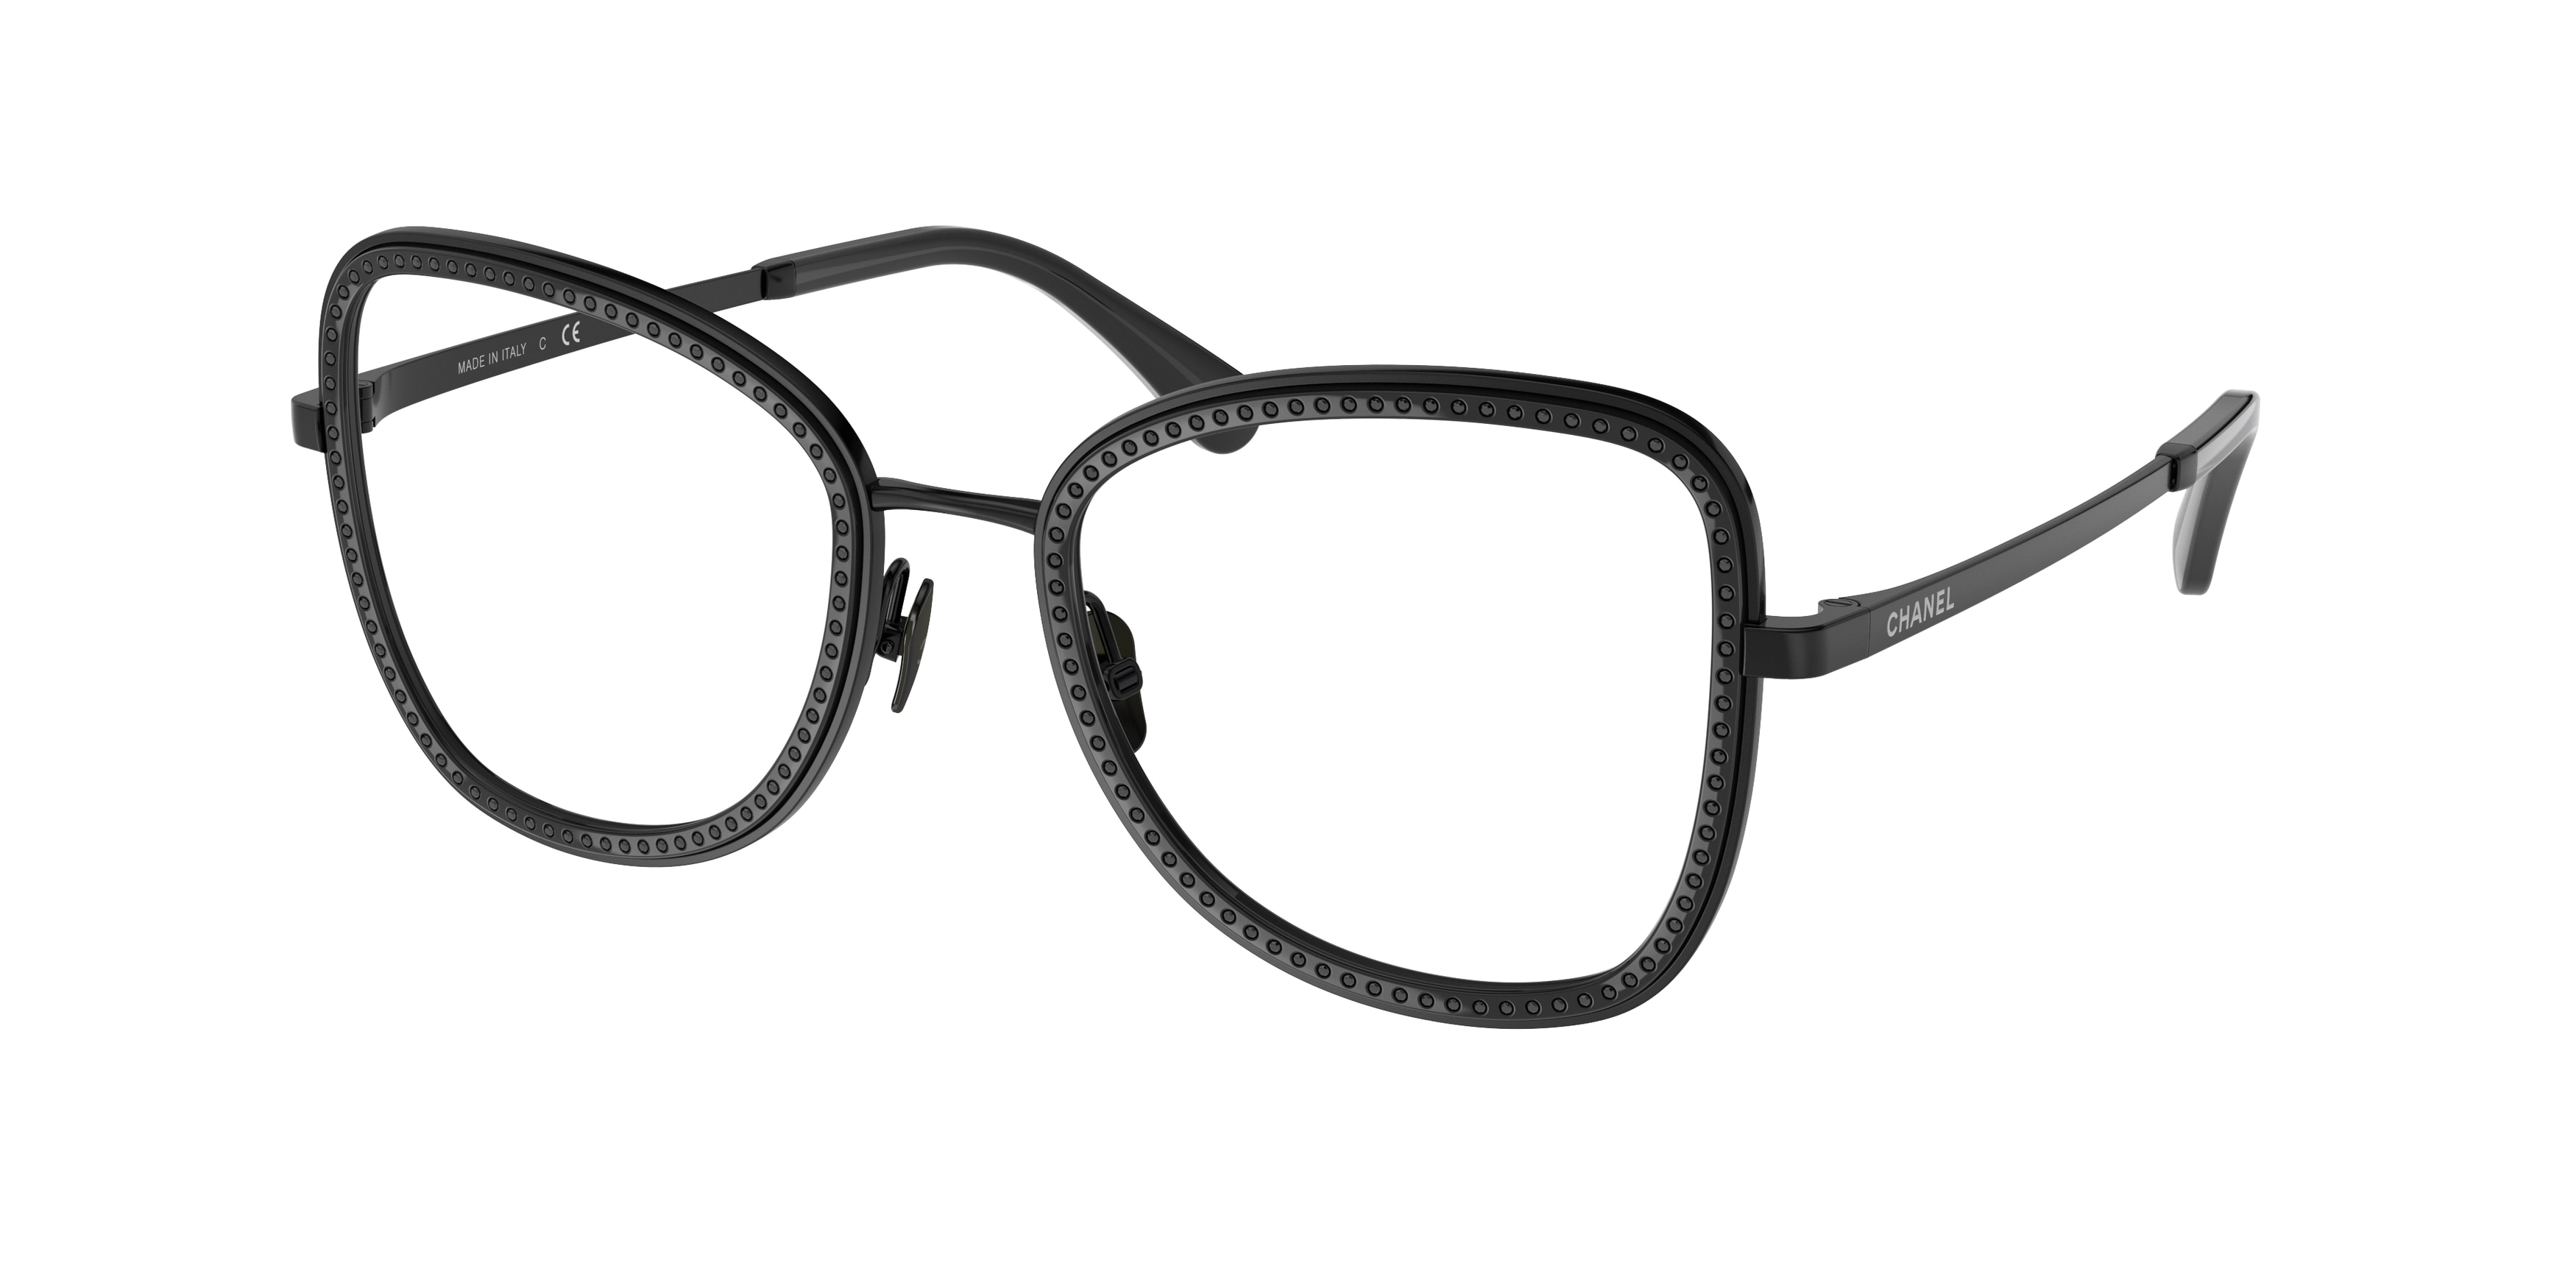 Chanel eyeglasses wwwmelpoejocombr